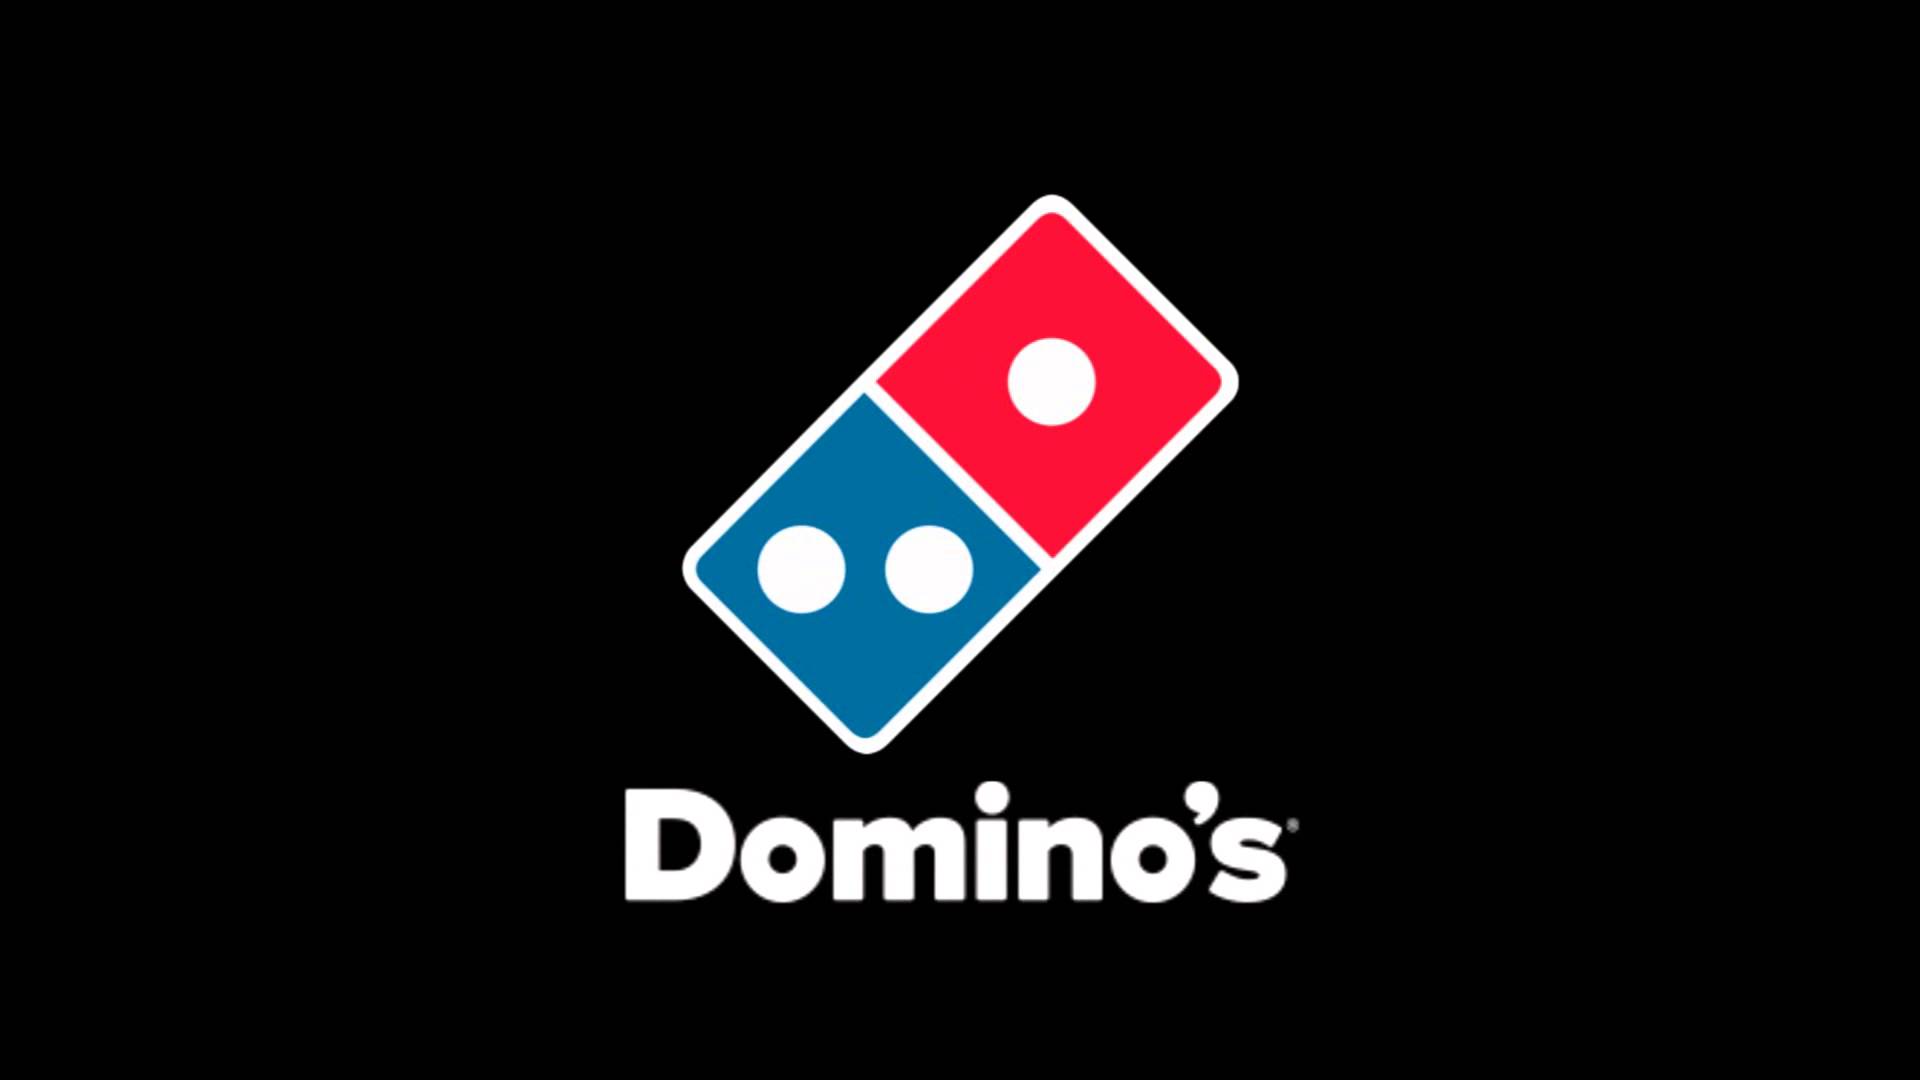 Dominos Logos